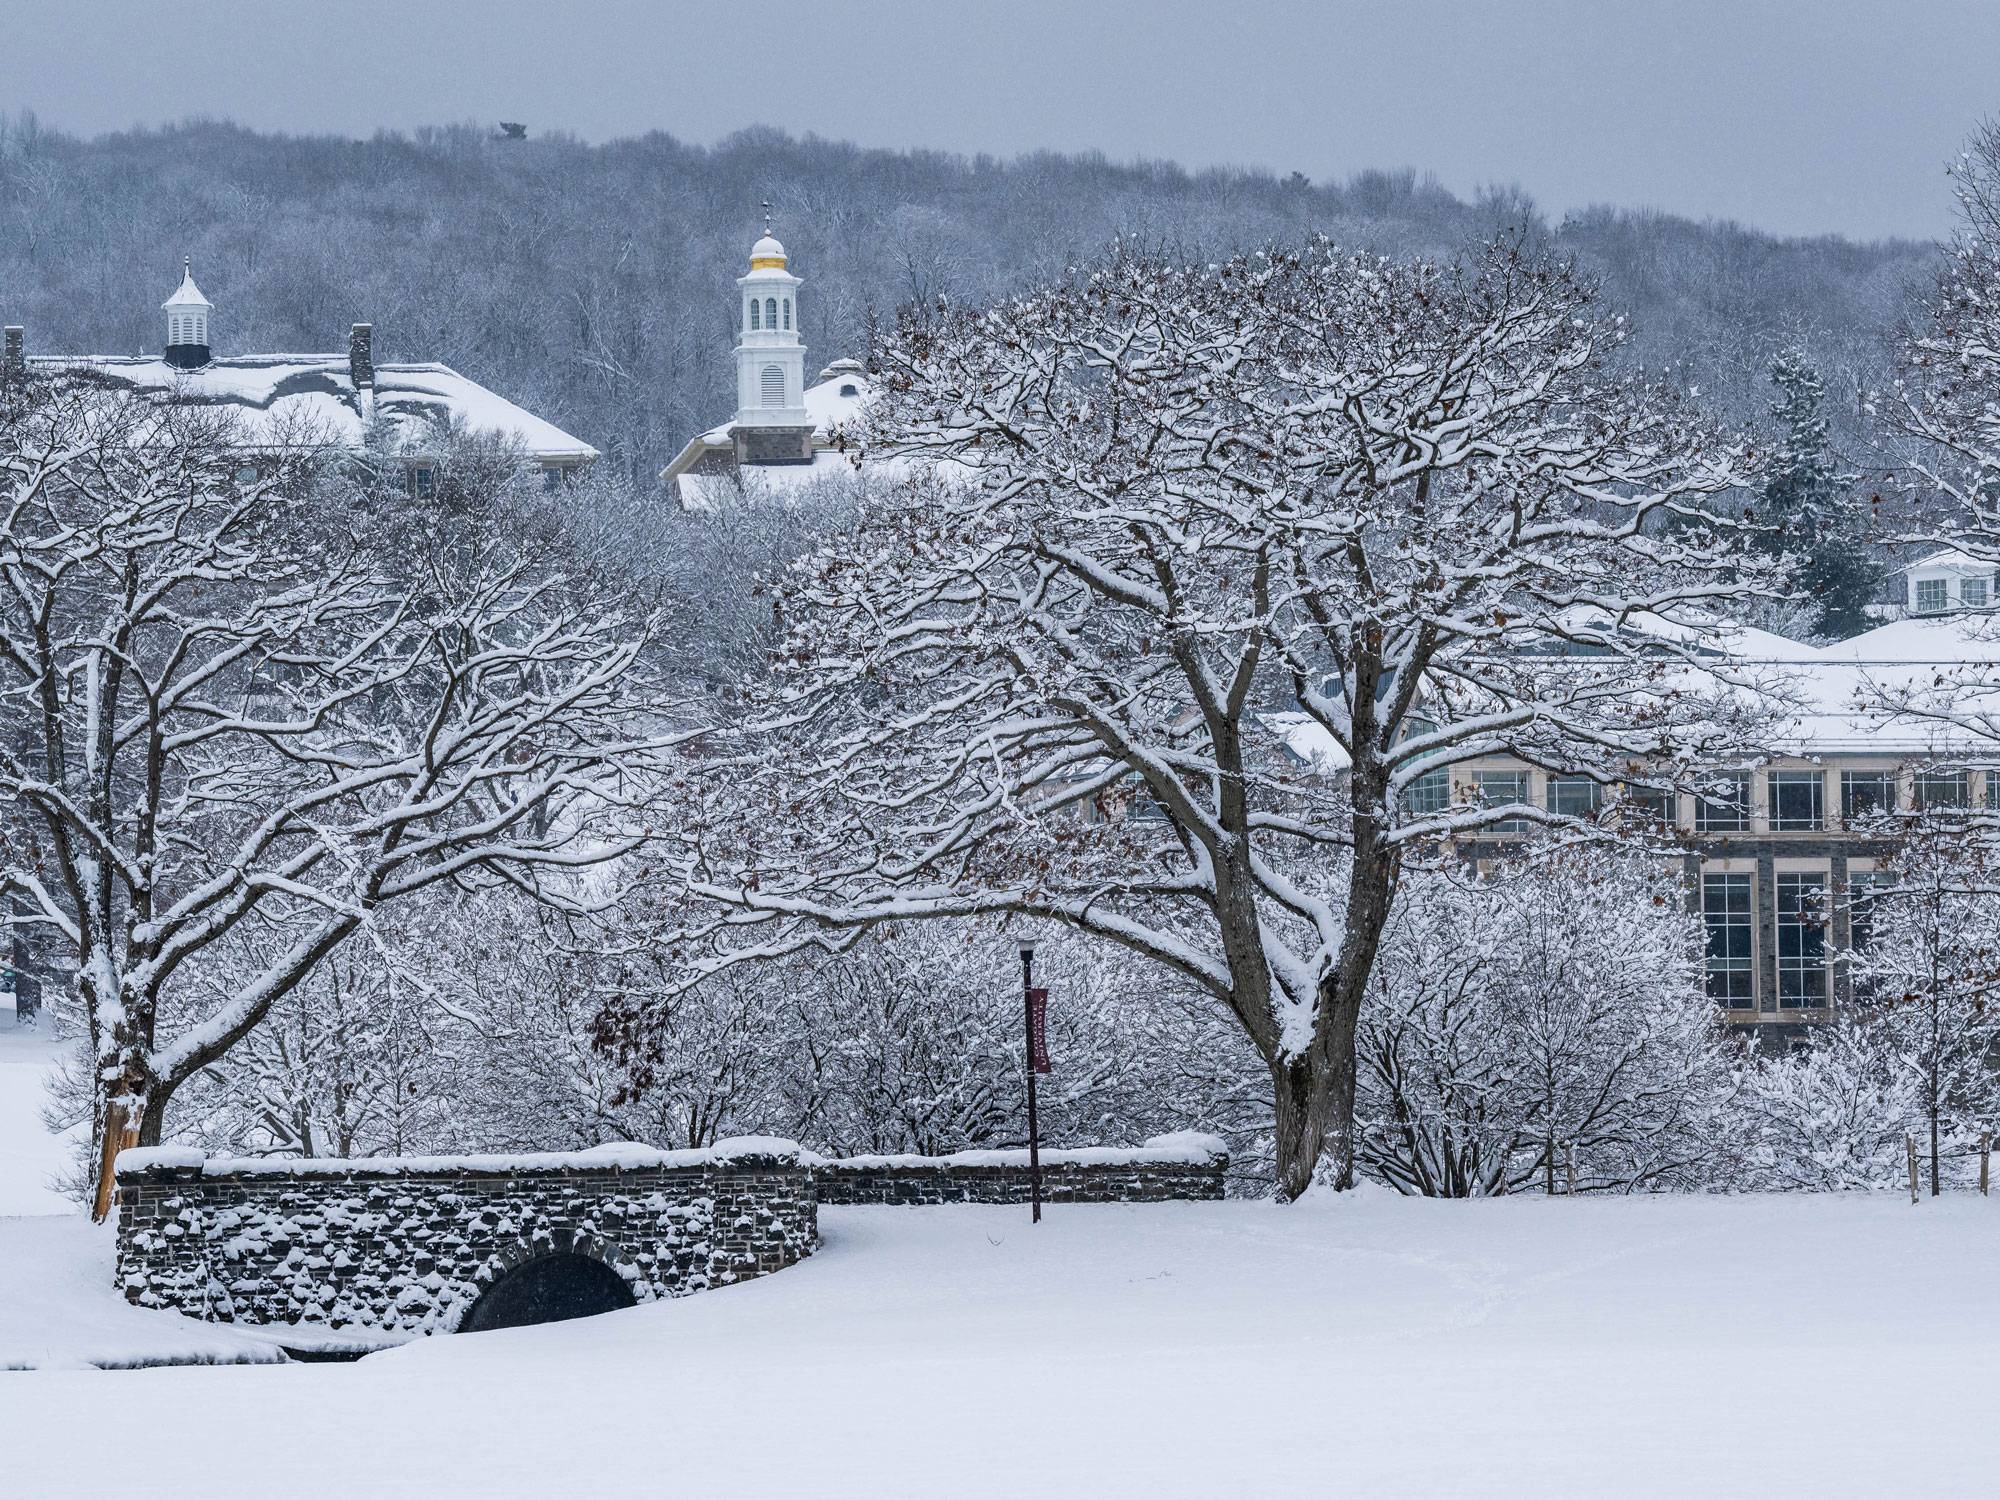 Colgate campus in winter